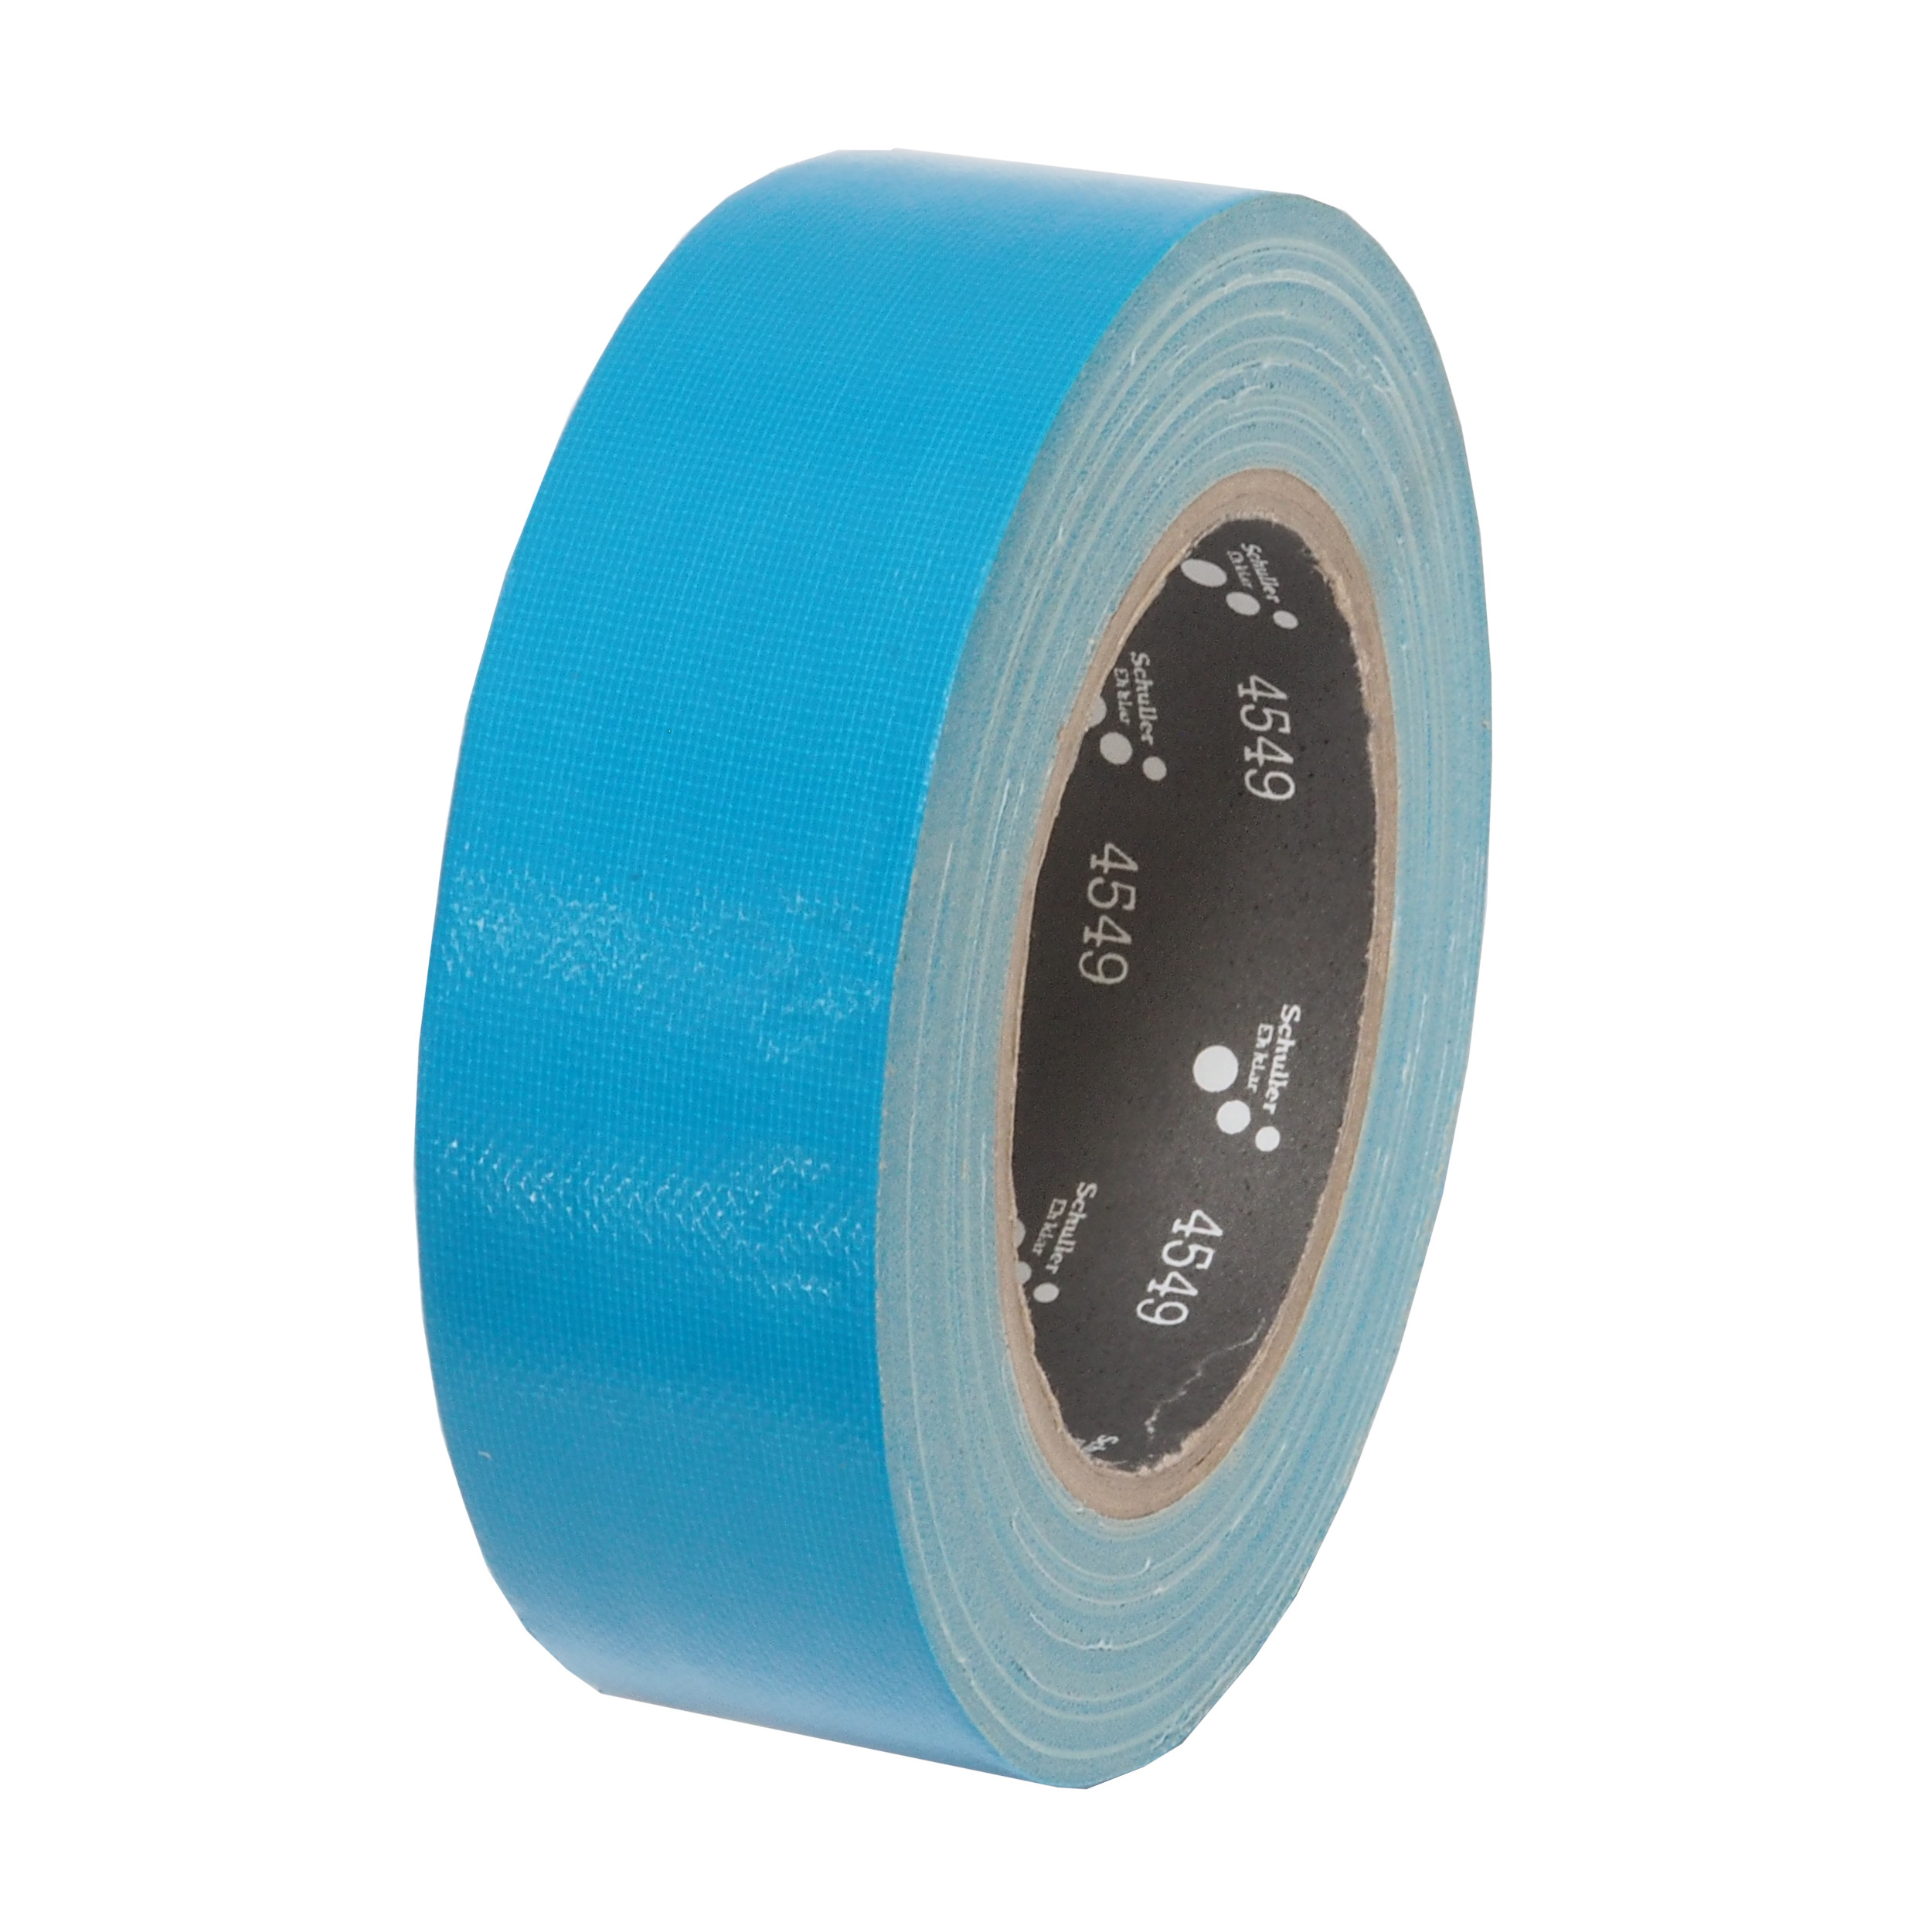 páska lepící, tkaninová, UV odolná, modrá, 25 mm x 25 m 0.22 Kg TOP Sklad4 701407 24